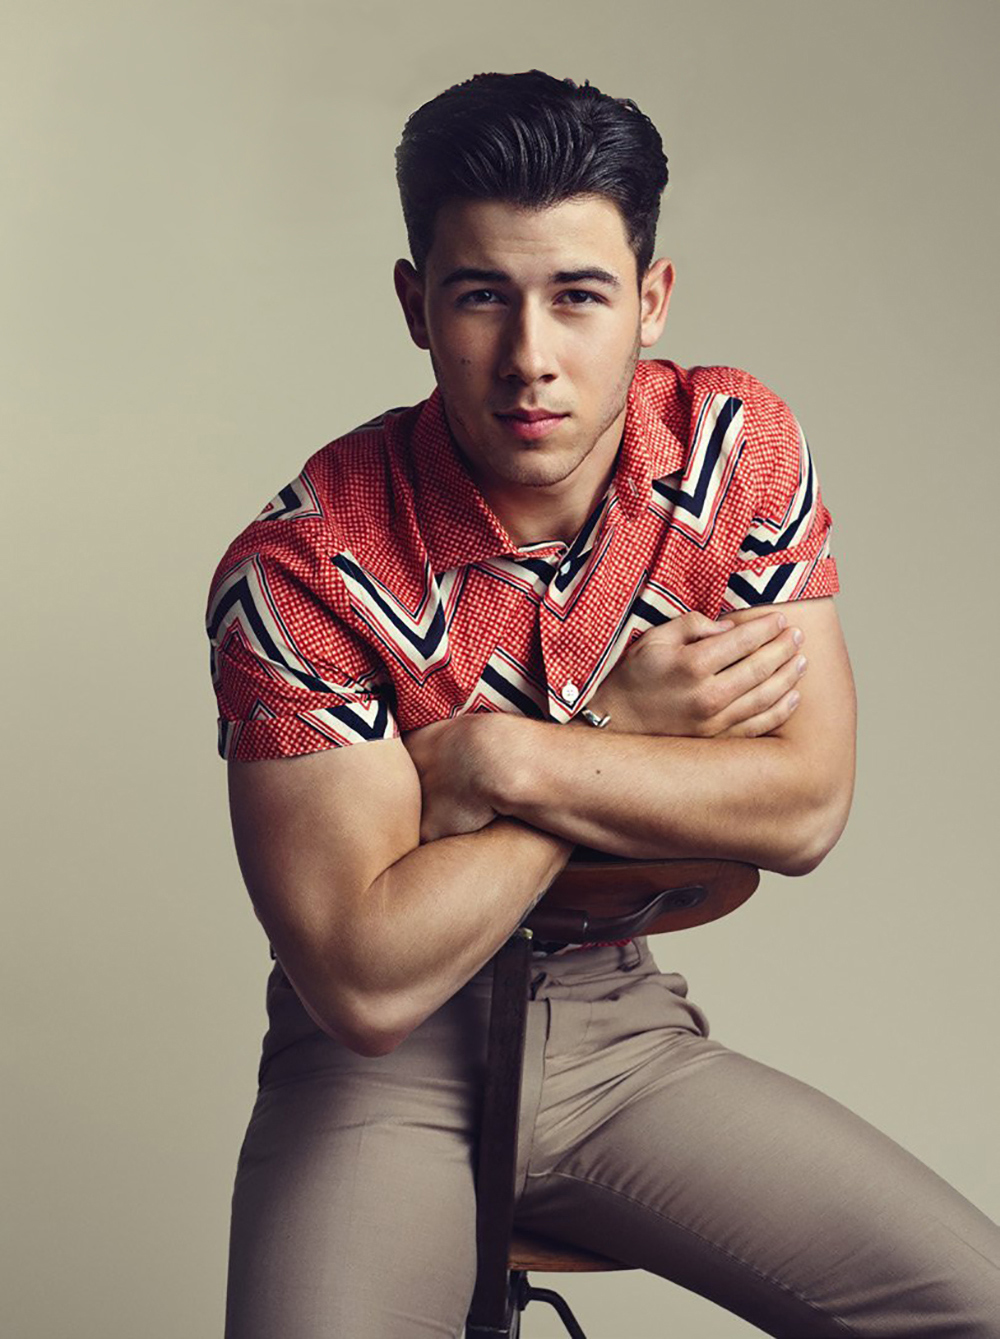 Nick Jonas By Arthur Delloye - Nick Jonas Modeling - HD Wallpaper 